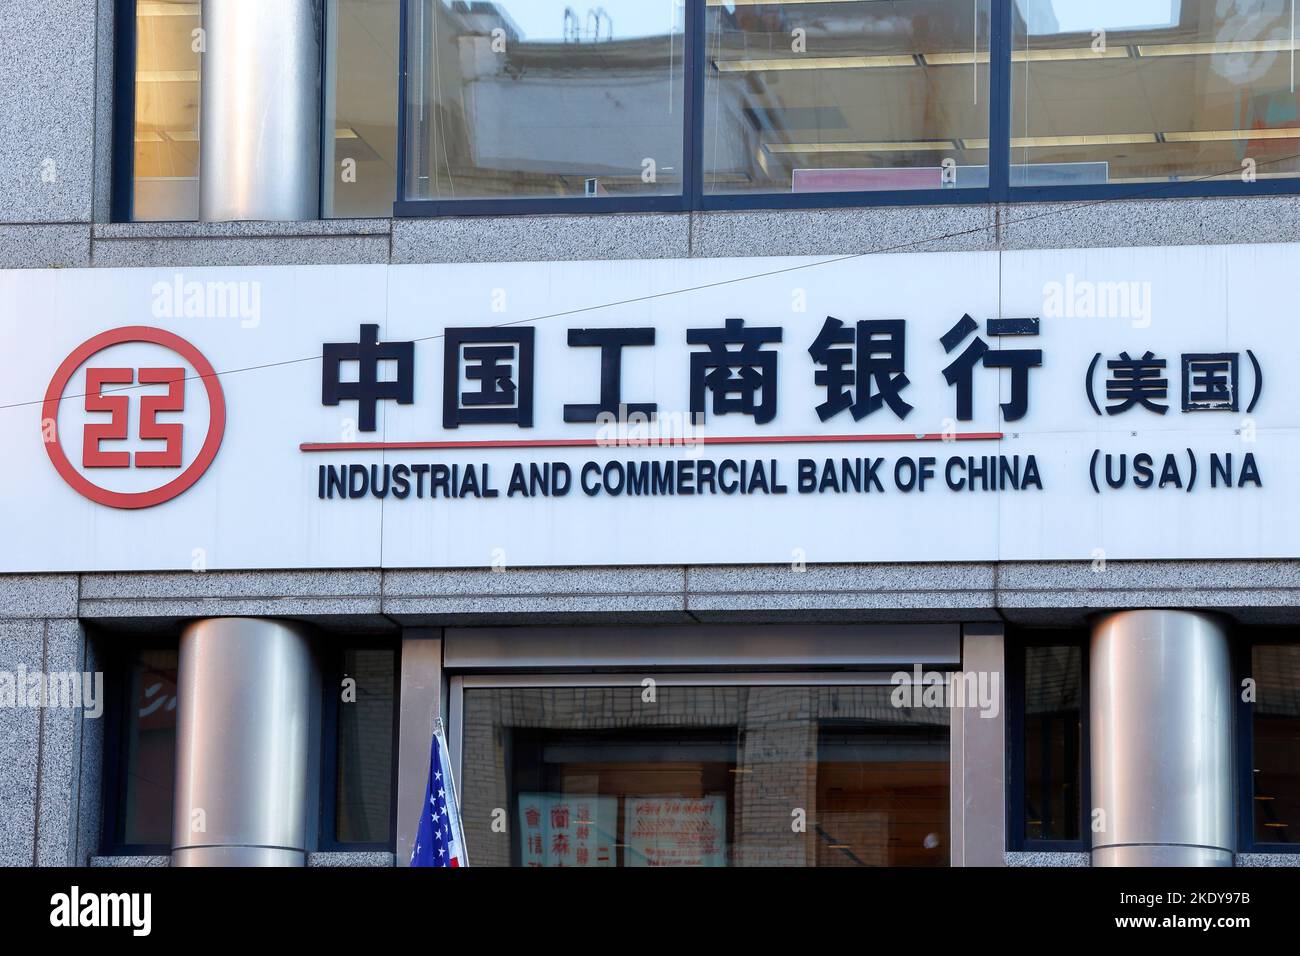 Signalisation pour la Banque industrielle et commerciale de Chine 中國工商銀行 à leur siège social dans le quartier chinois de New York. ICBC est la plus grande banque au monde Banque D'Images